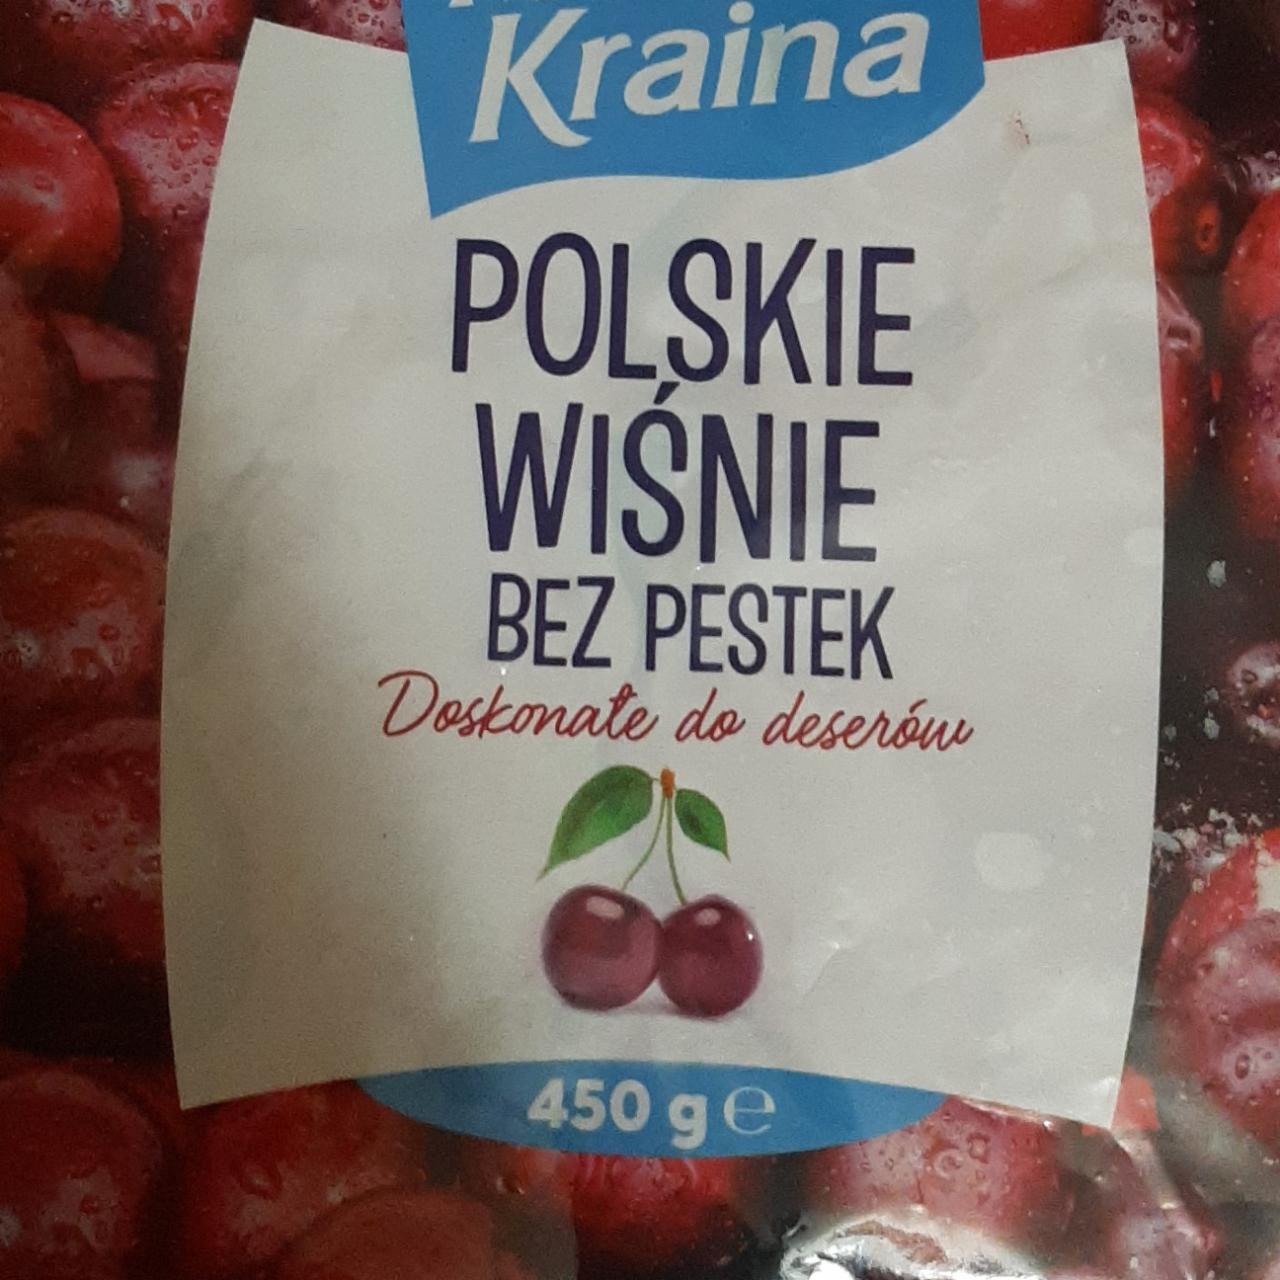 Фото - Polskie wiśnie bez pestek Mroźna Kraina